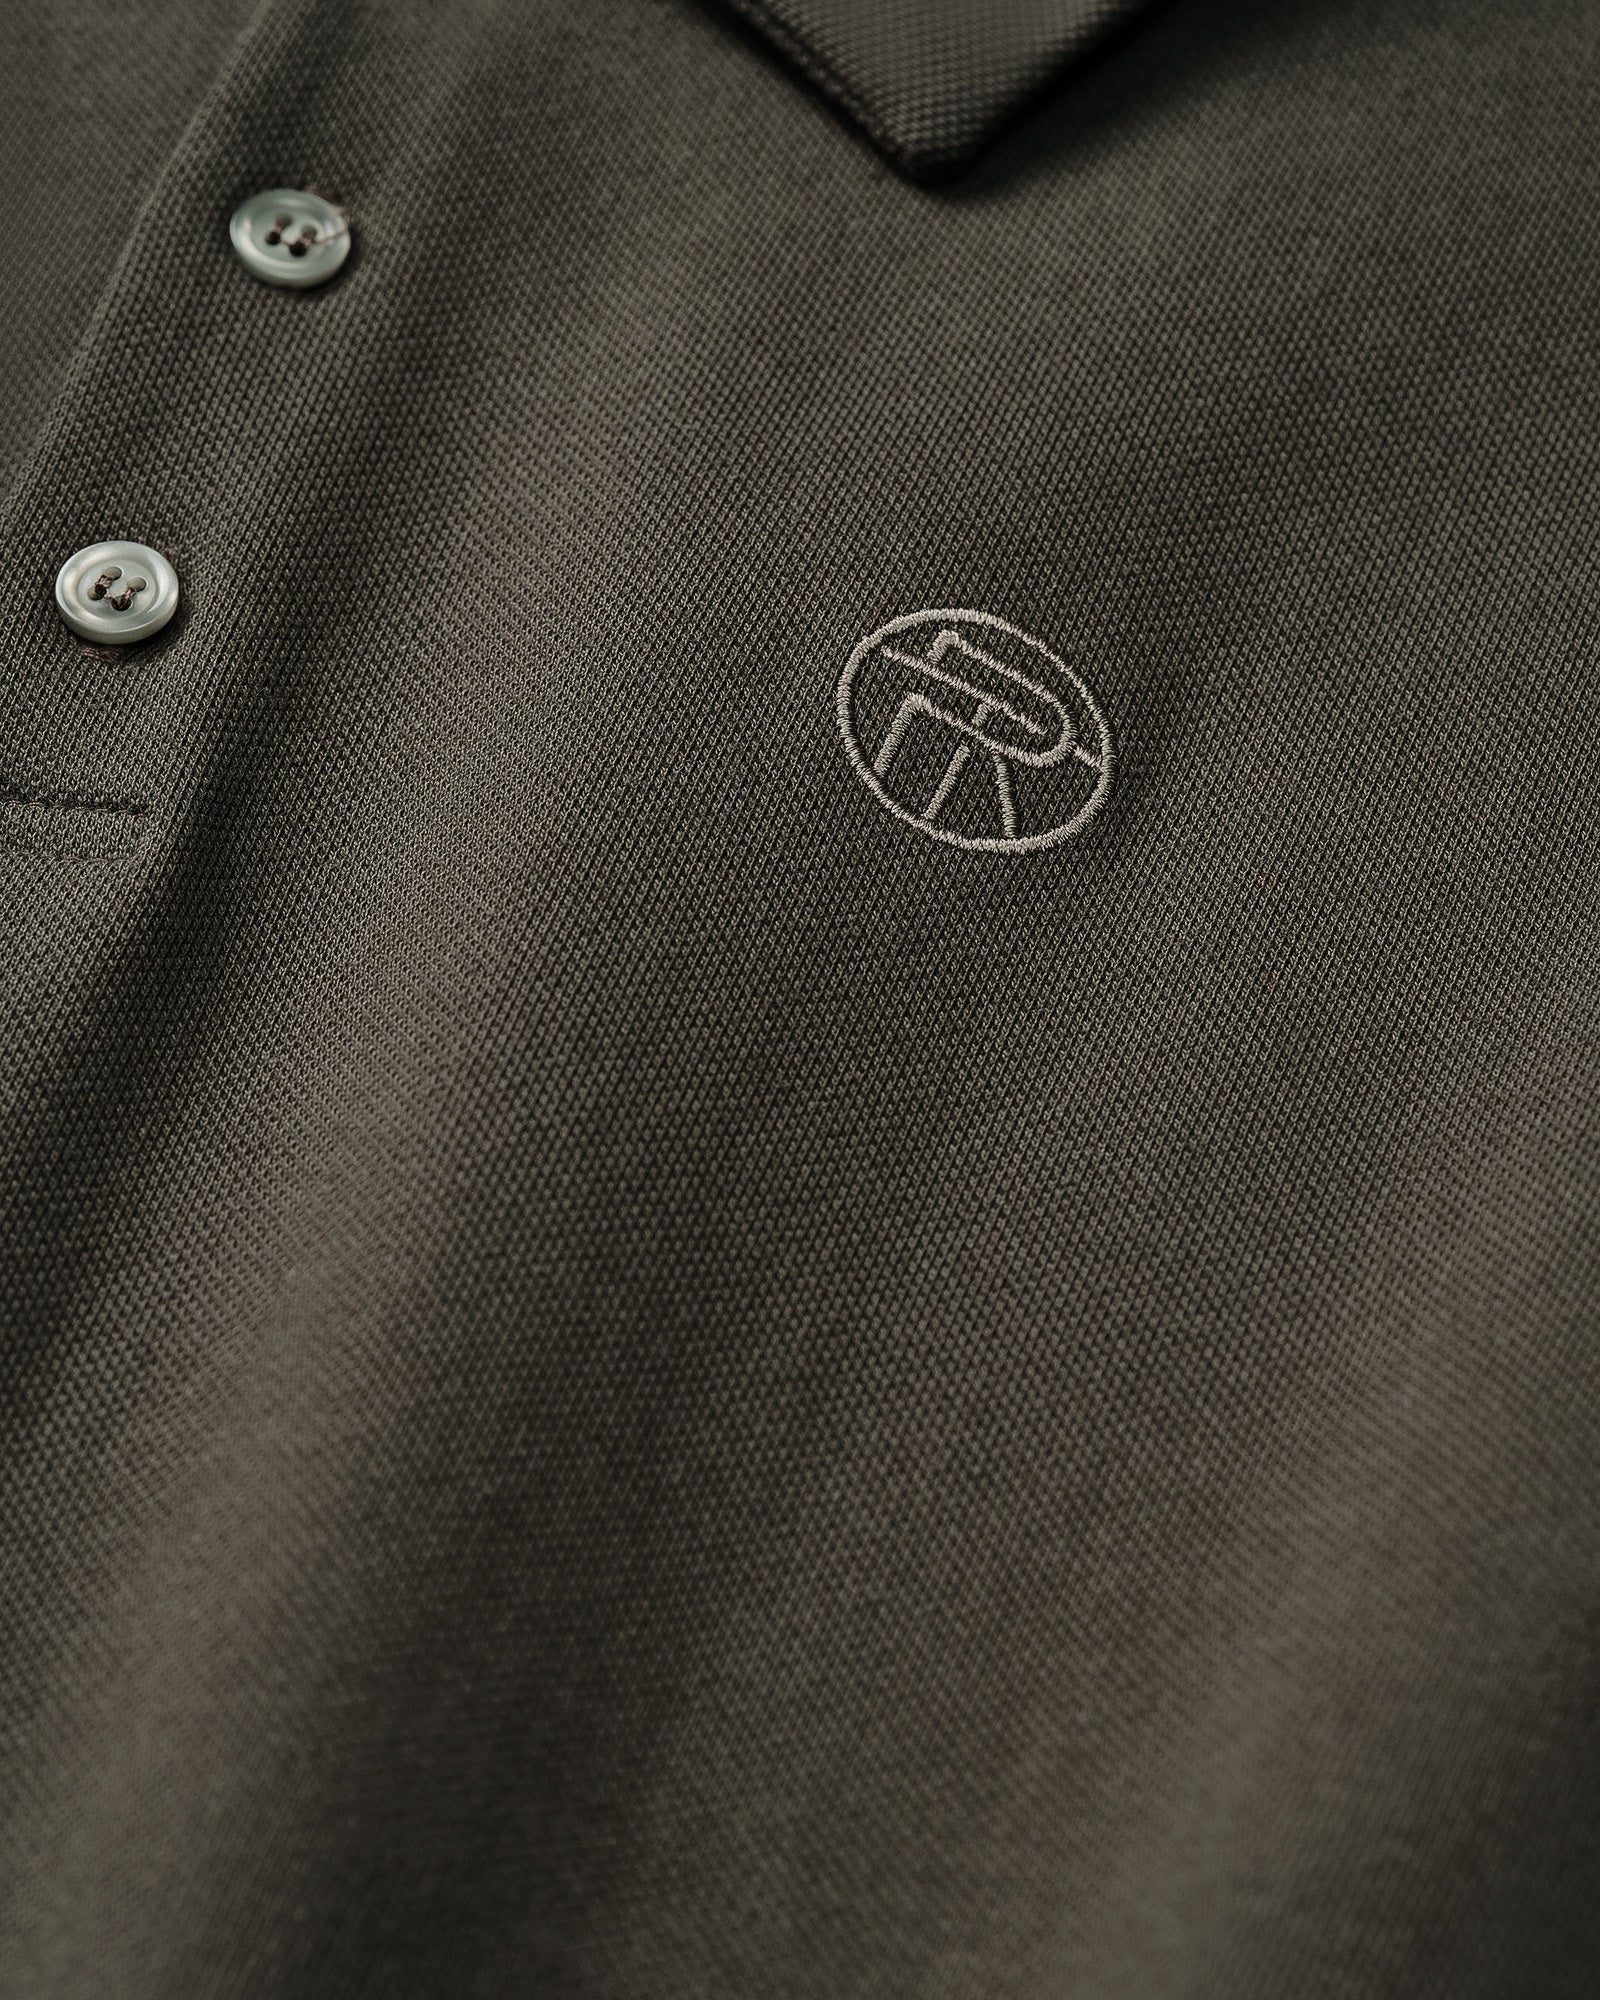 Piqué Polo Shirt Khaki - THE RESORT CO